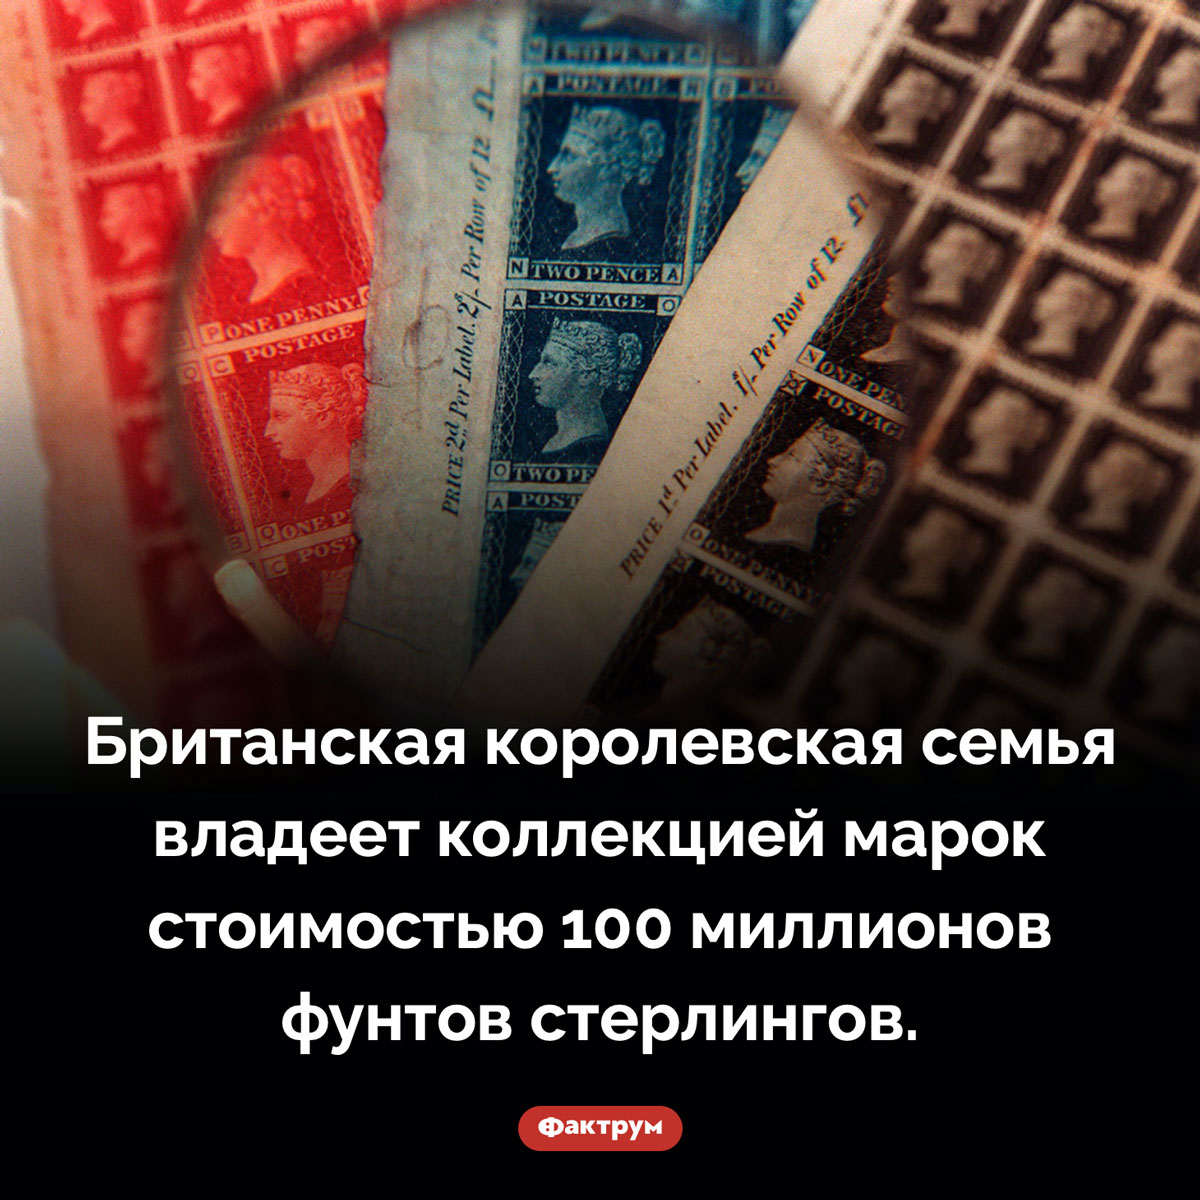 Короли-филателисты. Британская королевская семья владеет коллекцией марок стоимостью 100 миллионов фунтов стерлингов.